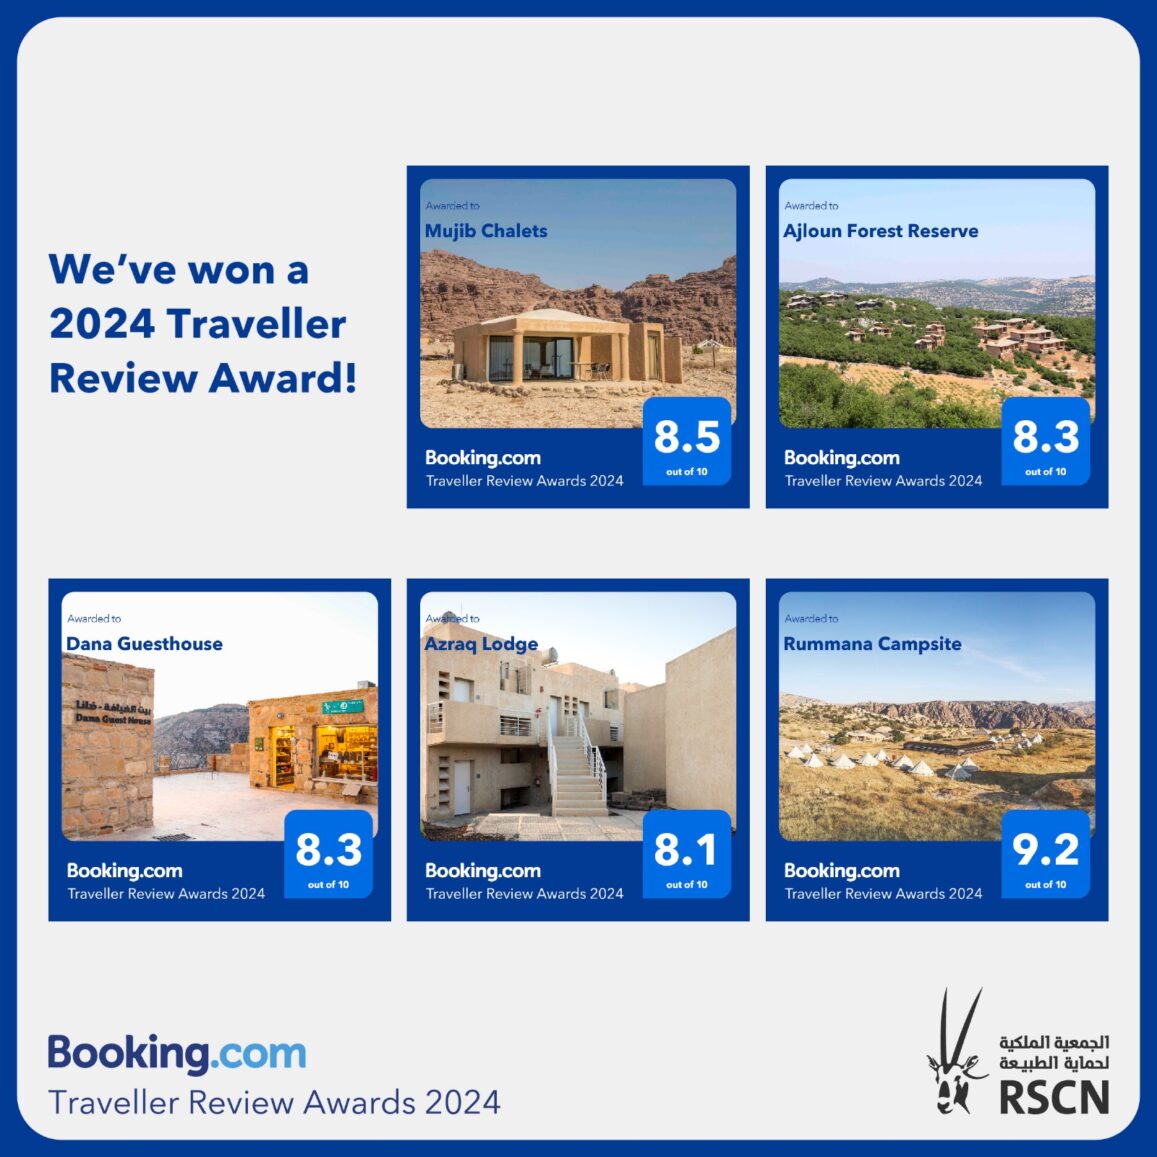 فوز 5 مواقع أردنية بجائزة تقييم المسافر